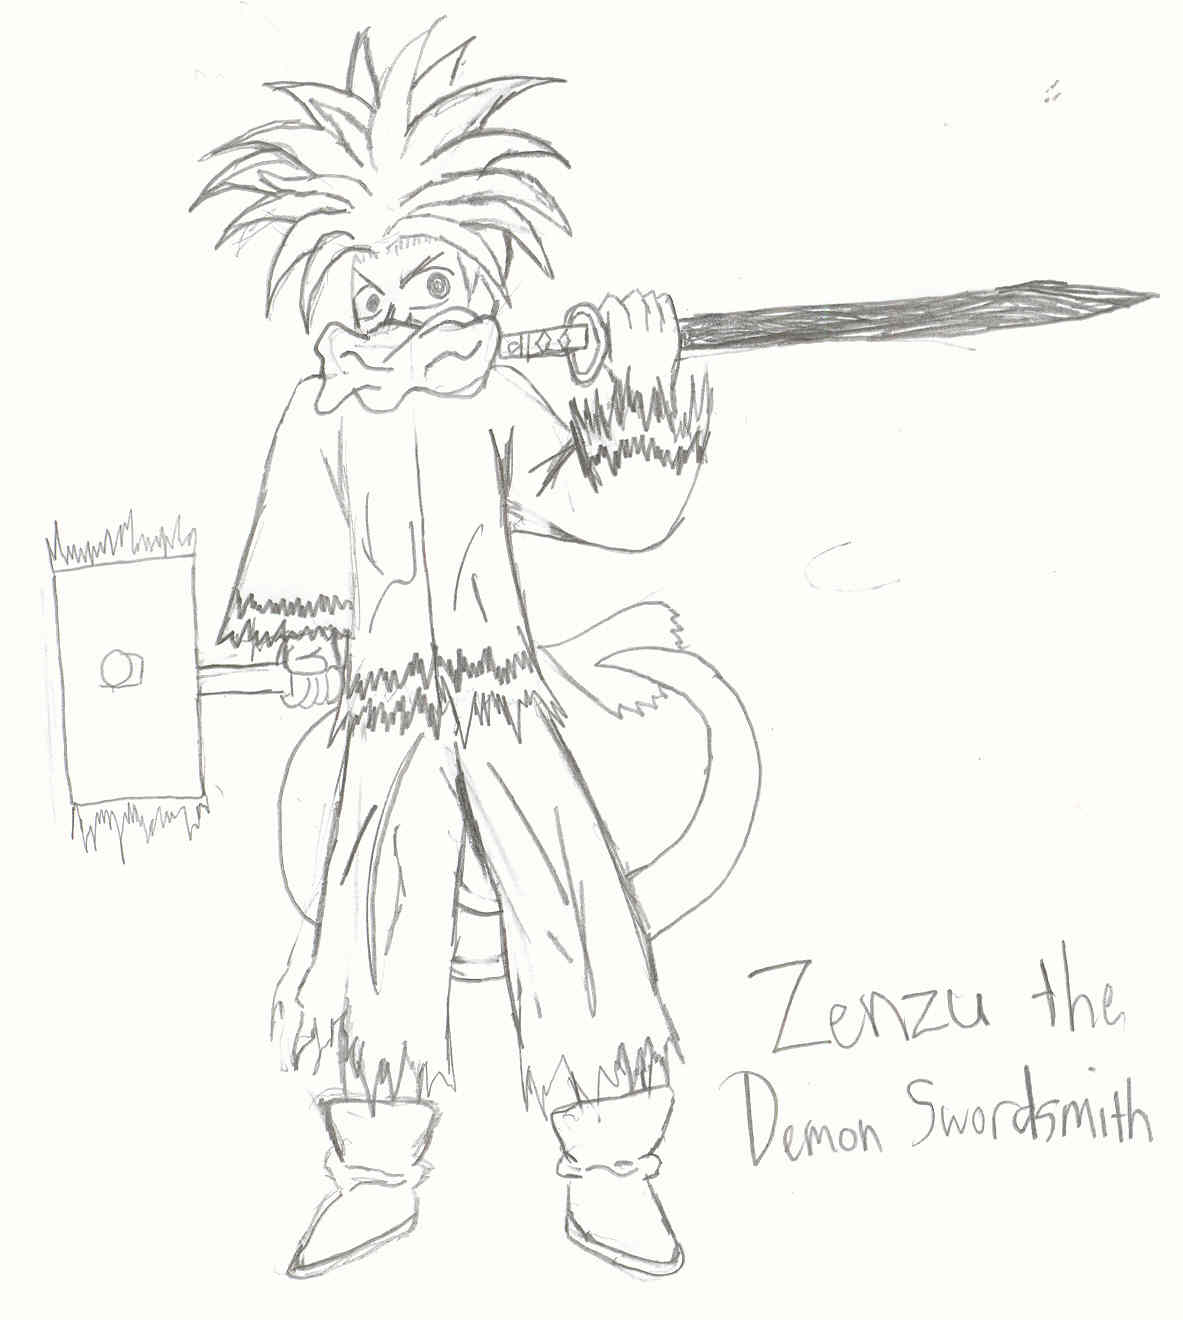 Zenzu the Demon Swordsmith by MageKnight007